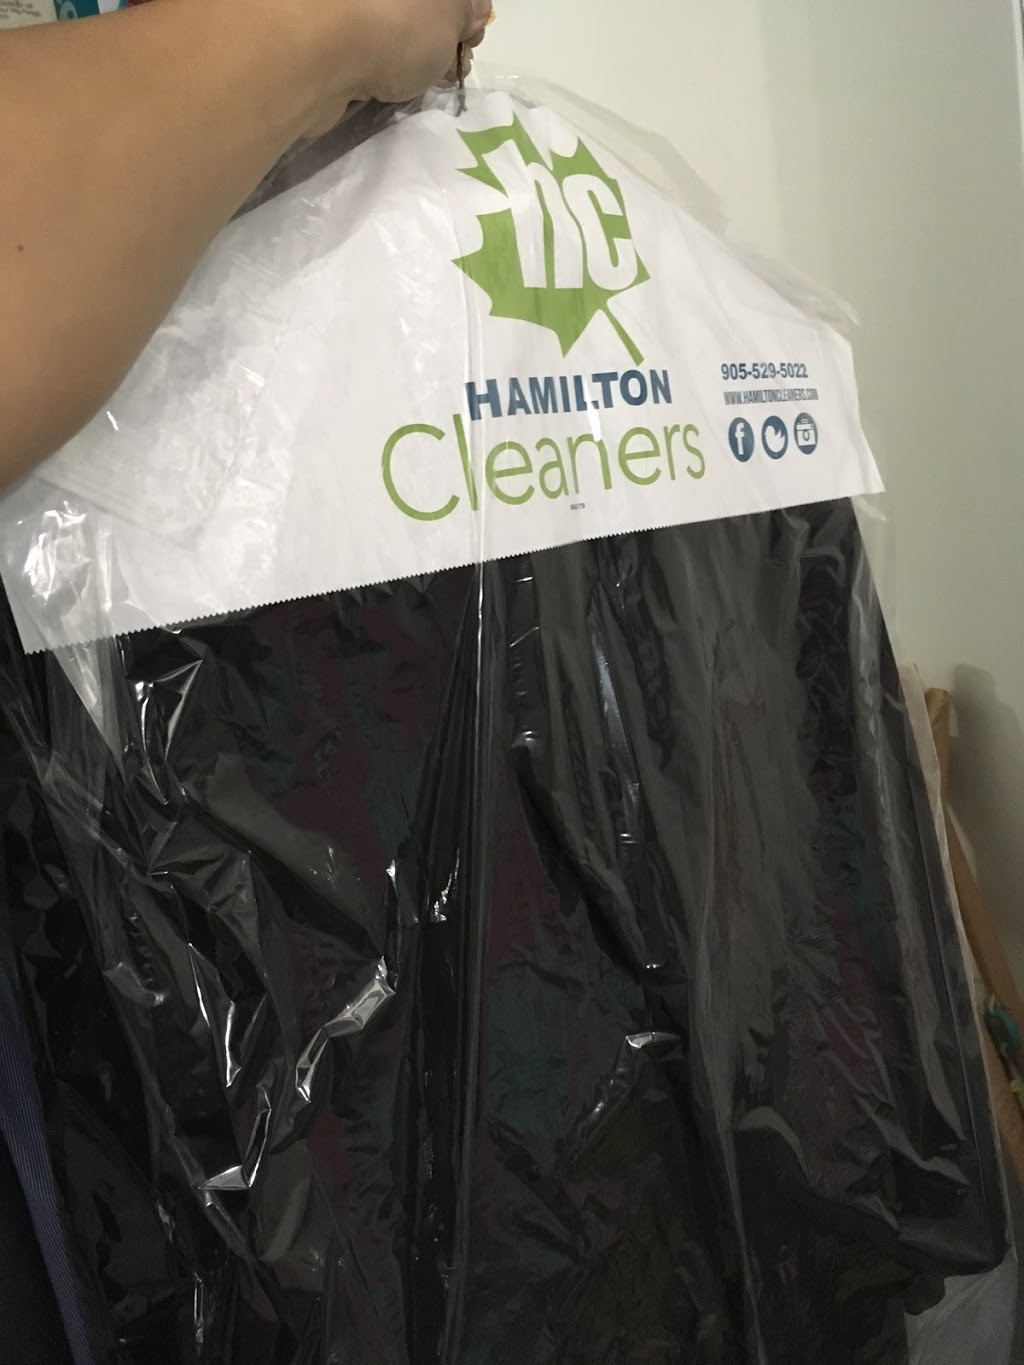 Hamilton Cleaners | 552 Main St E, Hamilton, ON L8M 1J1, Canada | Phone: (905) 529-5022